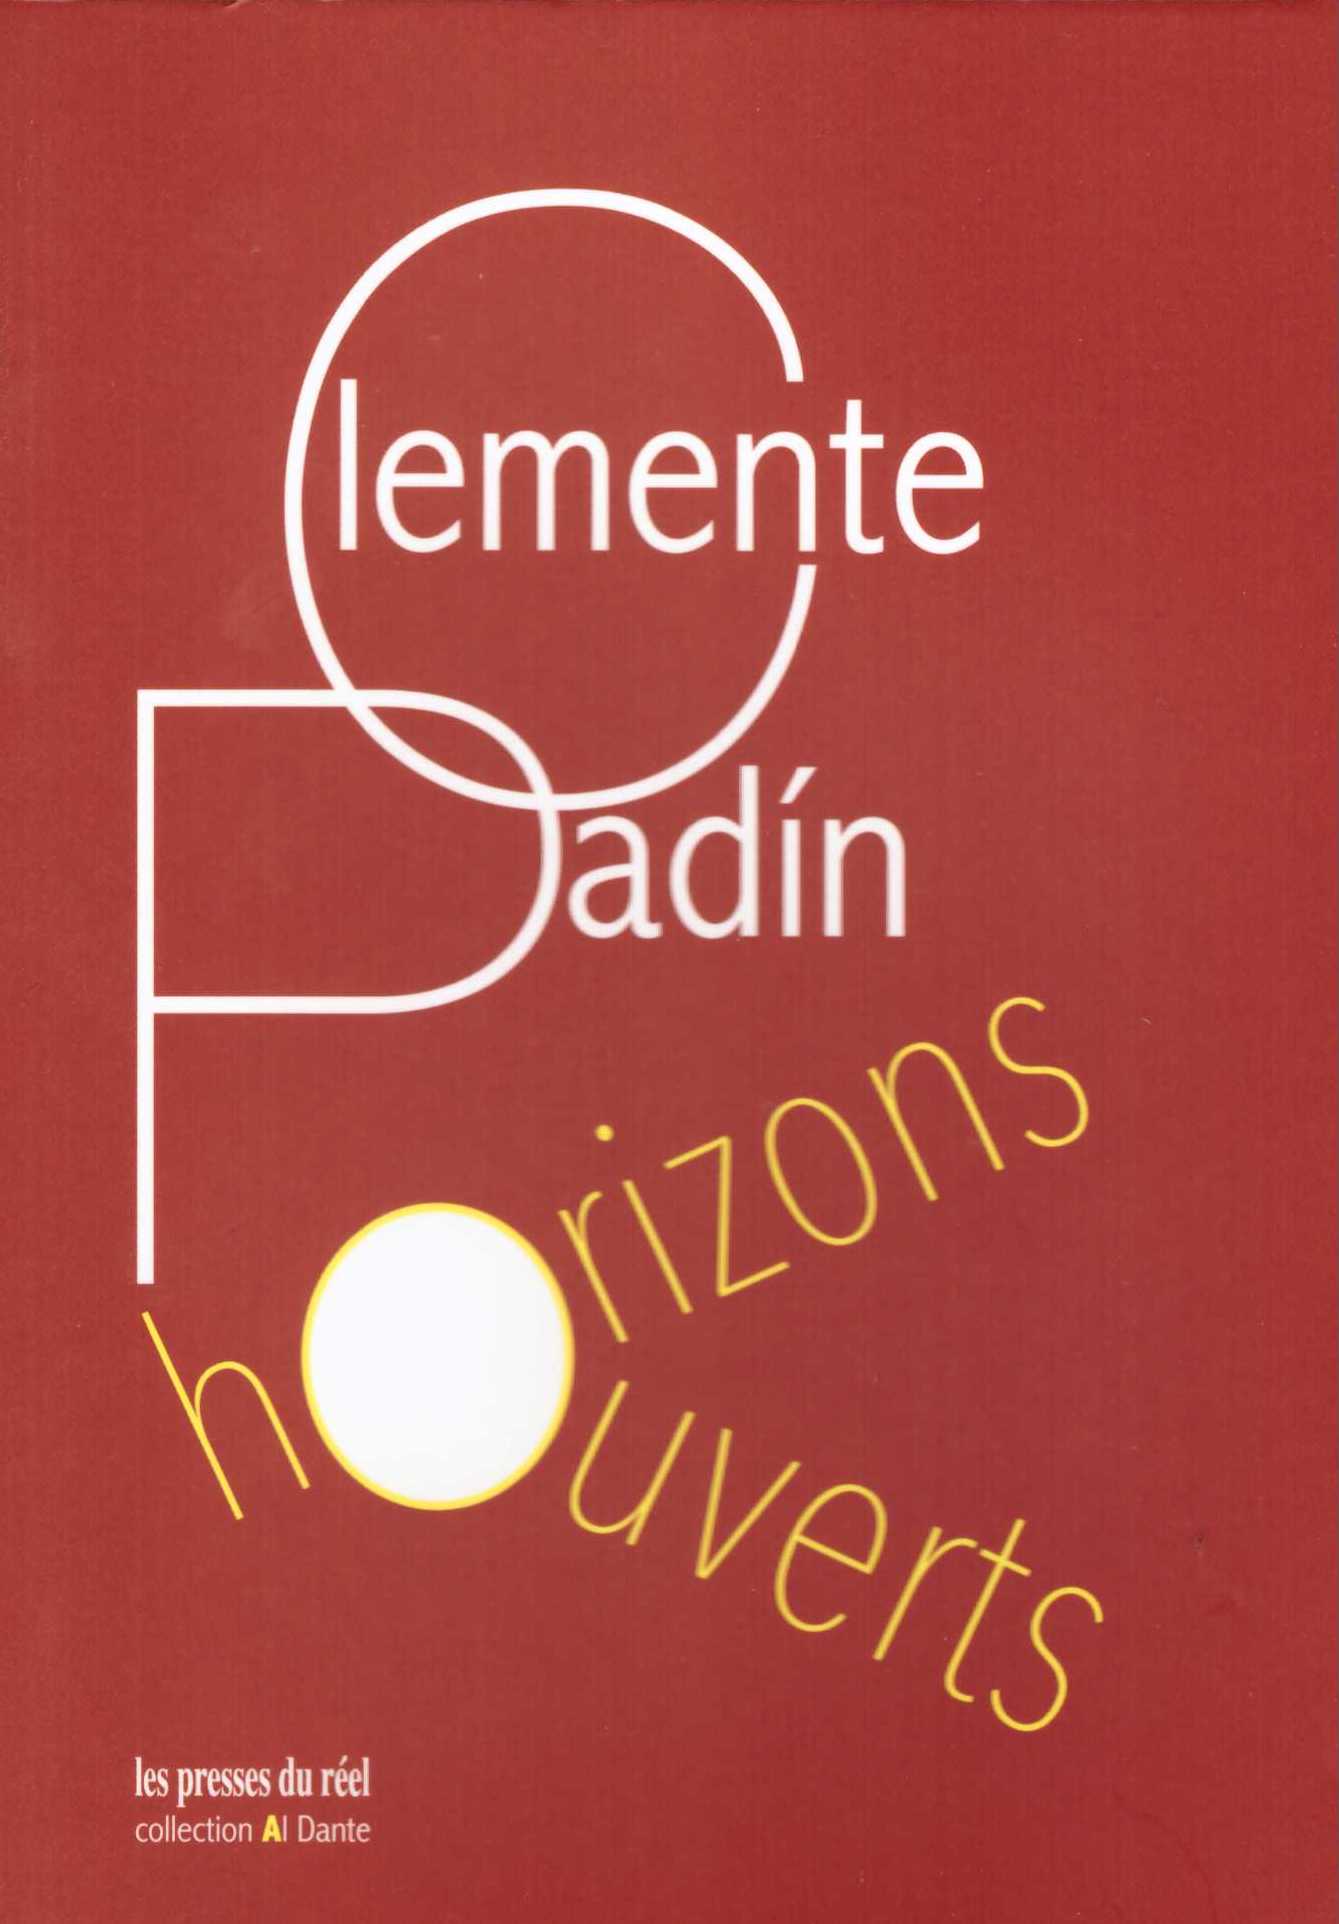 PADÍN, Clemente - Horizons ouverts & autres poèmes